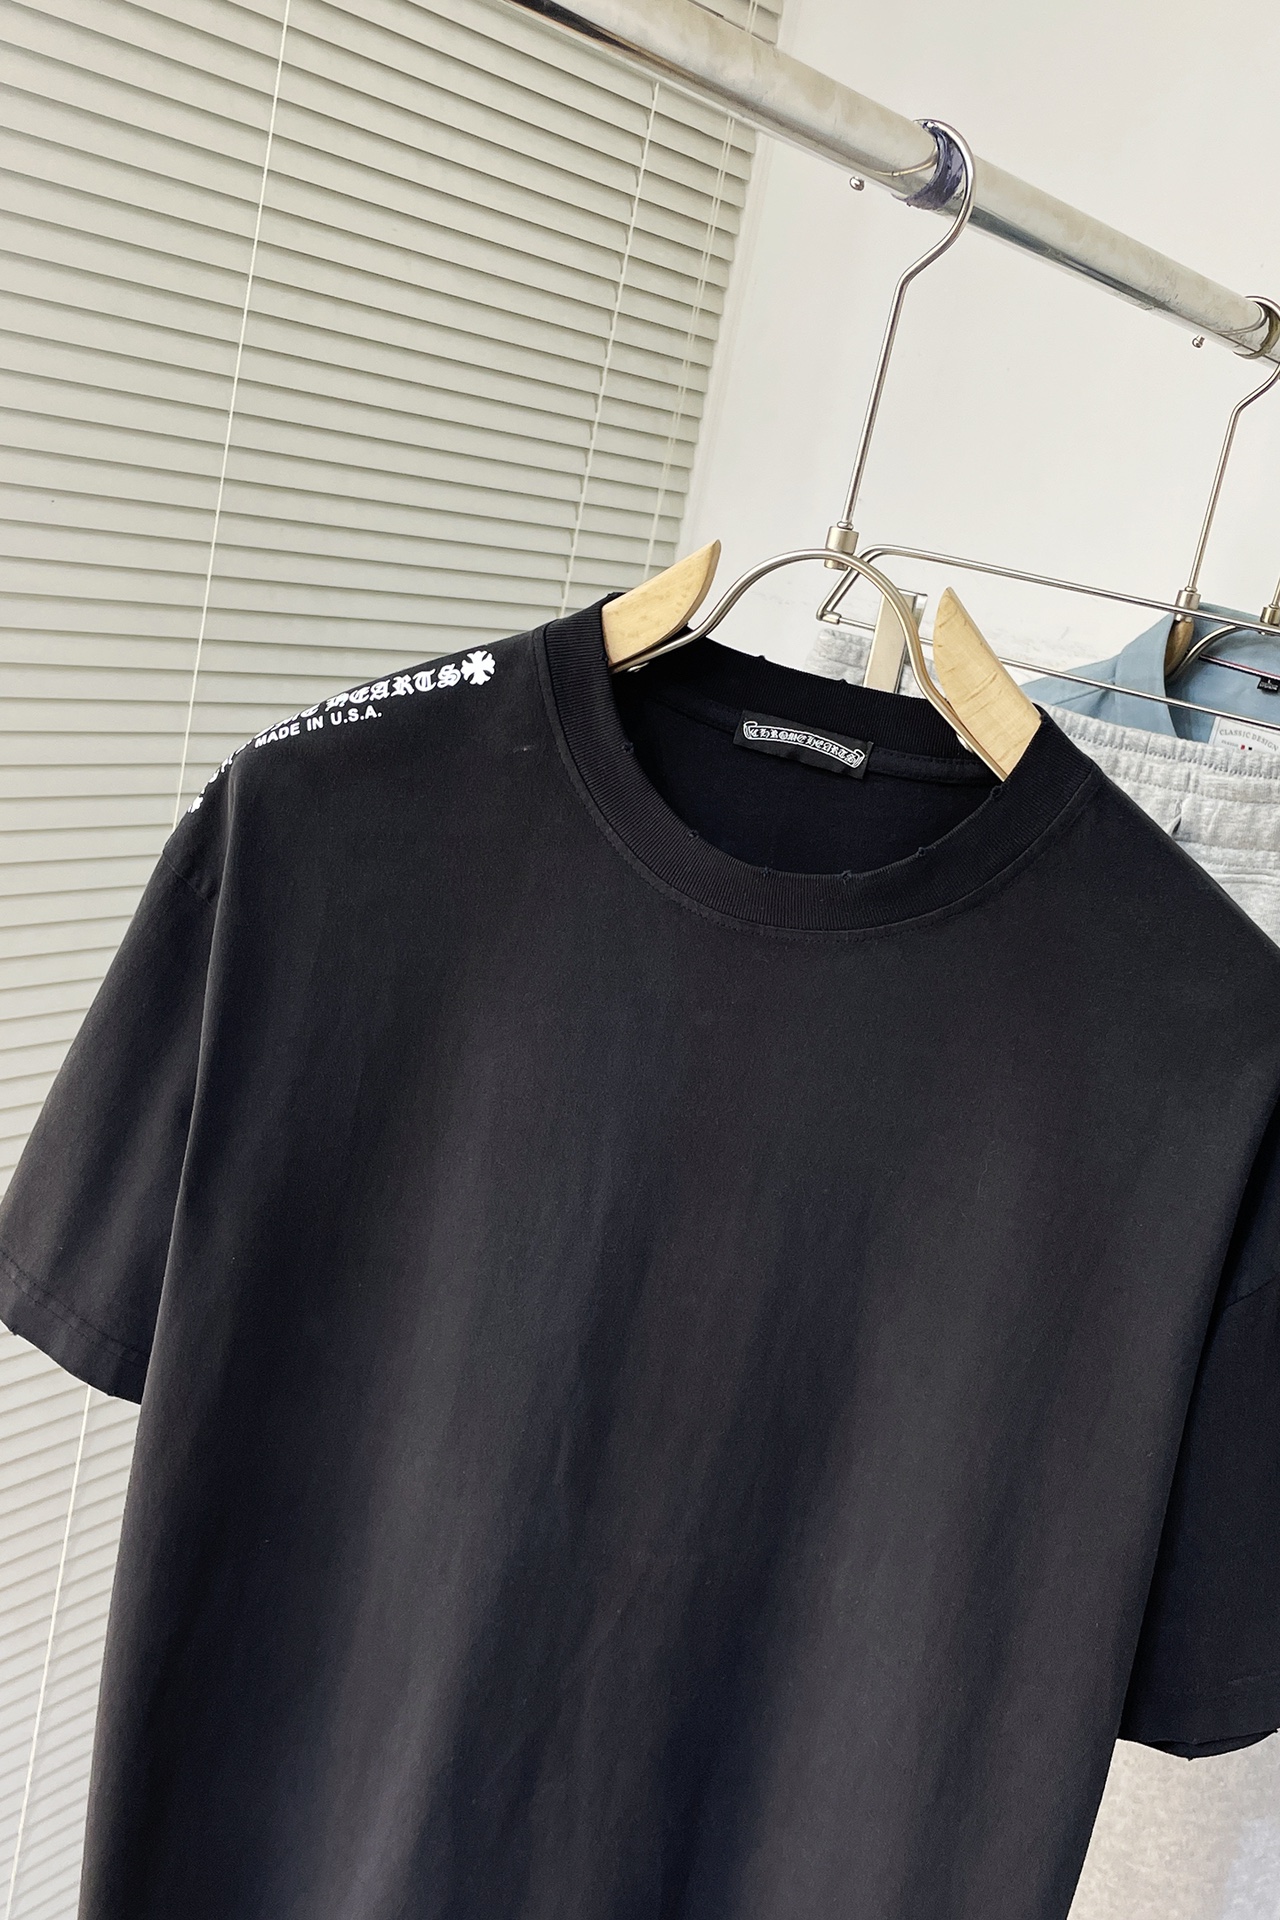 限定販売 クロムハーツtシャツ サイズ感スーパーコピー トップス 純綿 24新品 高級感 シンプル ブラック_2